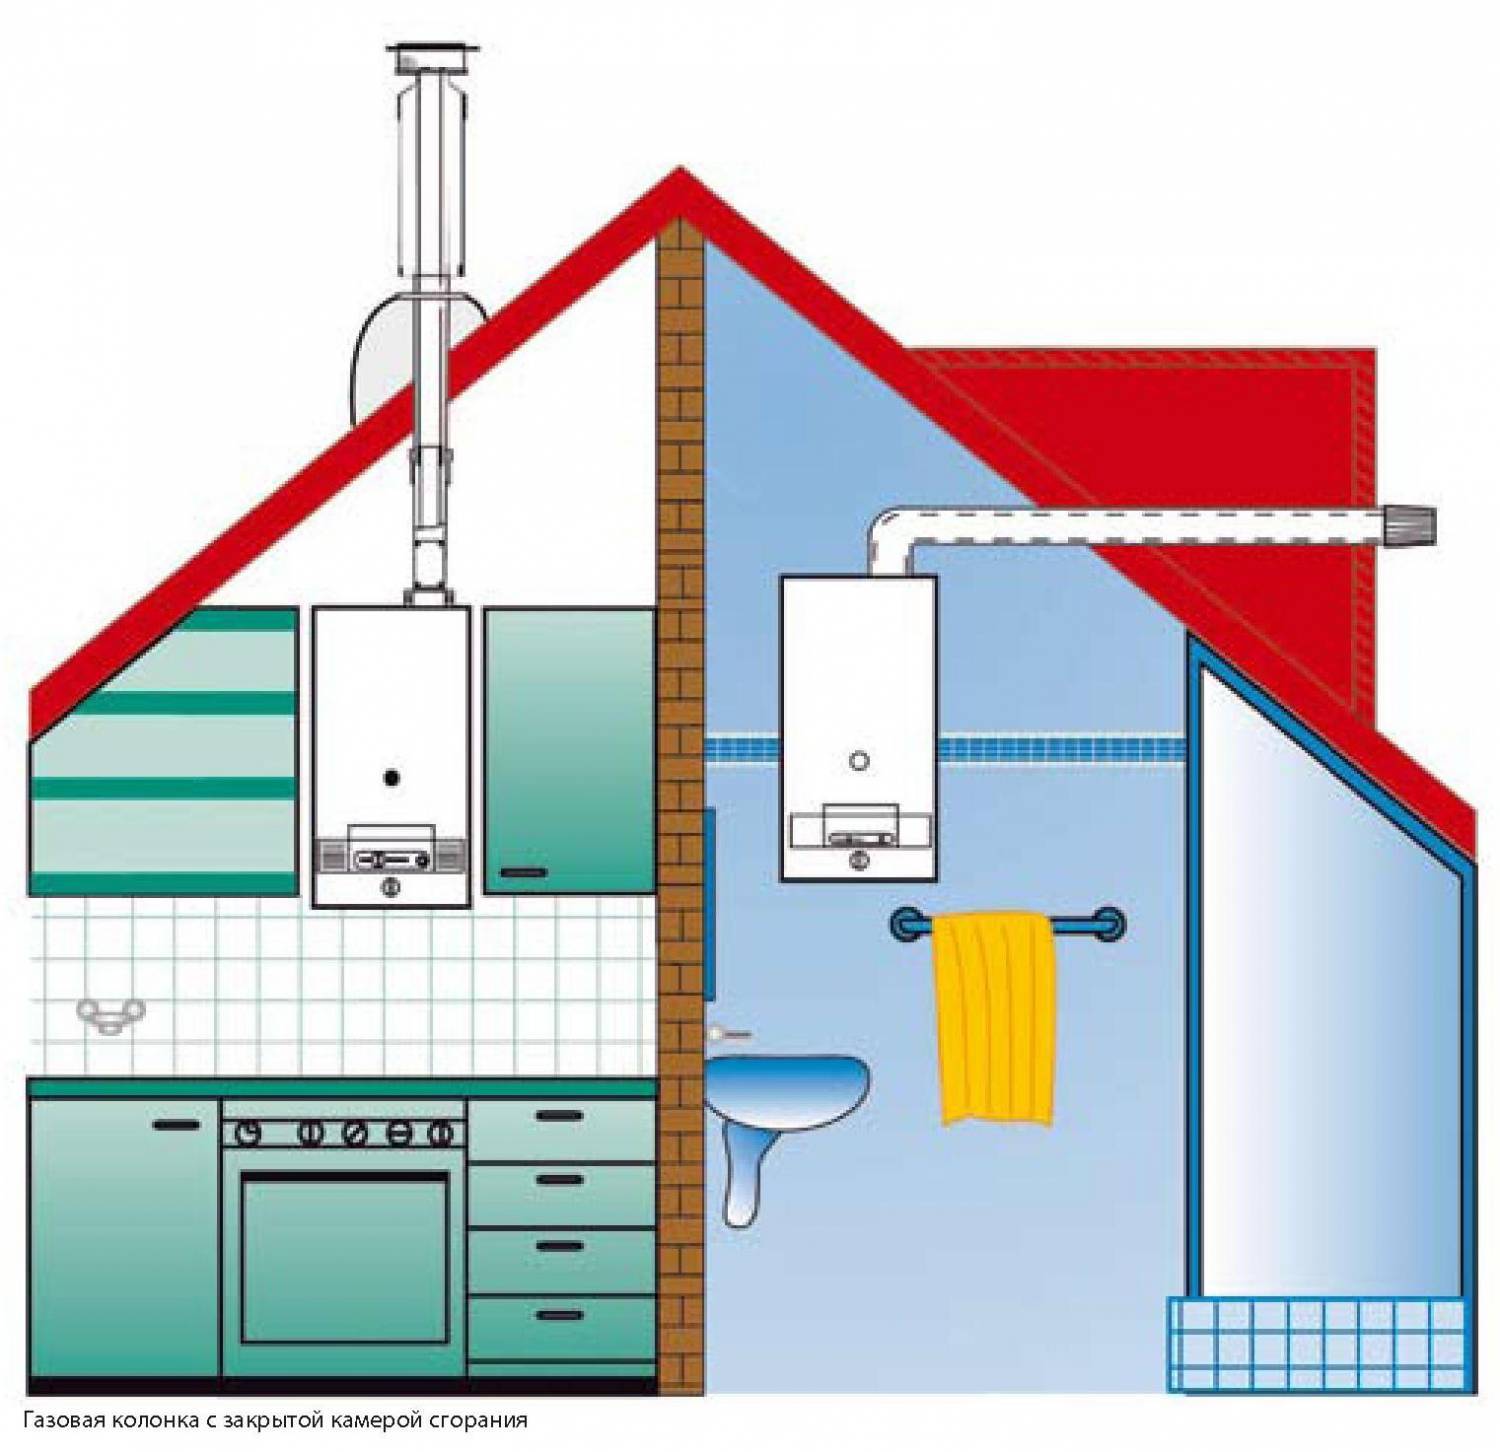 Что нужно знать при установке газового котла в ванной комнате?